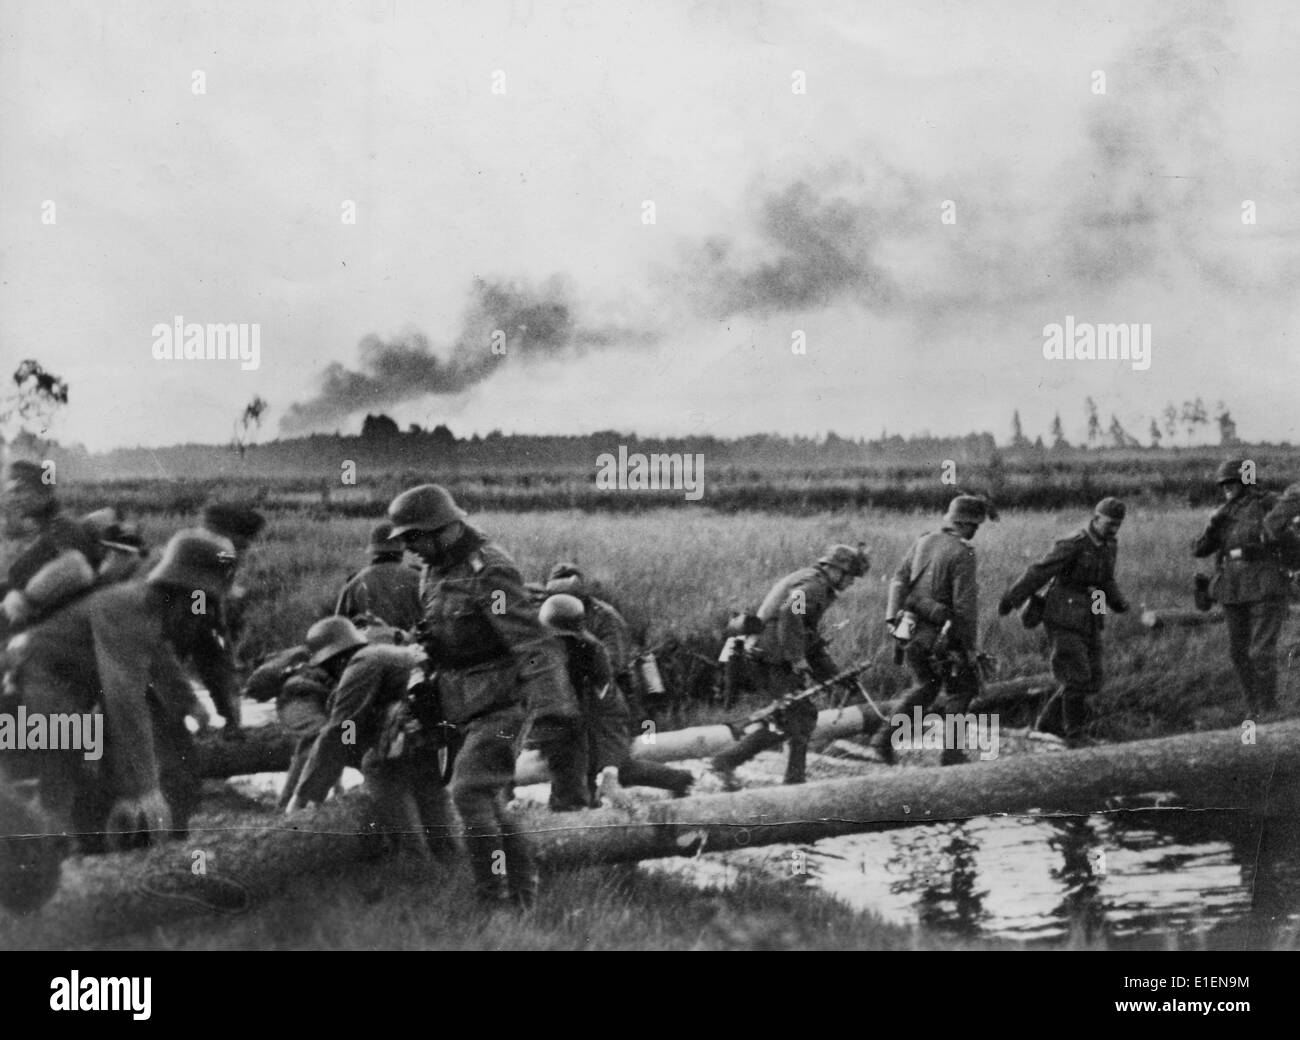 20 июня 1941. Войска вермахта пересекают границу СССР. 22 Июня 1941 река Буг. Немецкие солдаты 22 июня 1941.